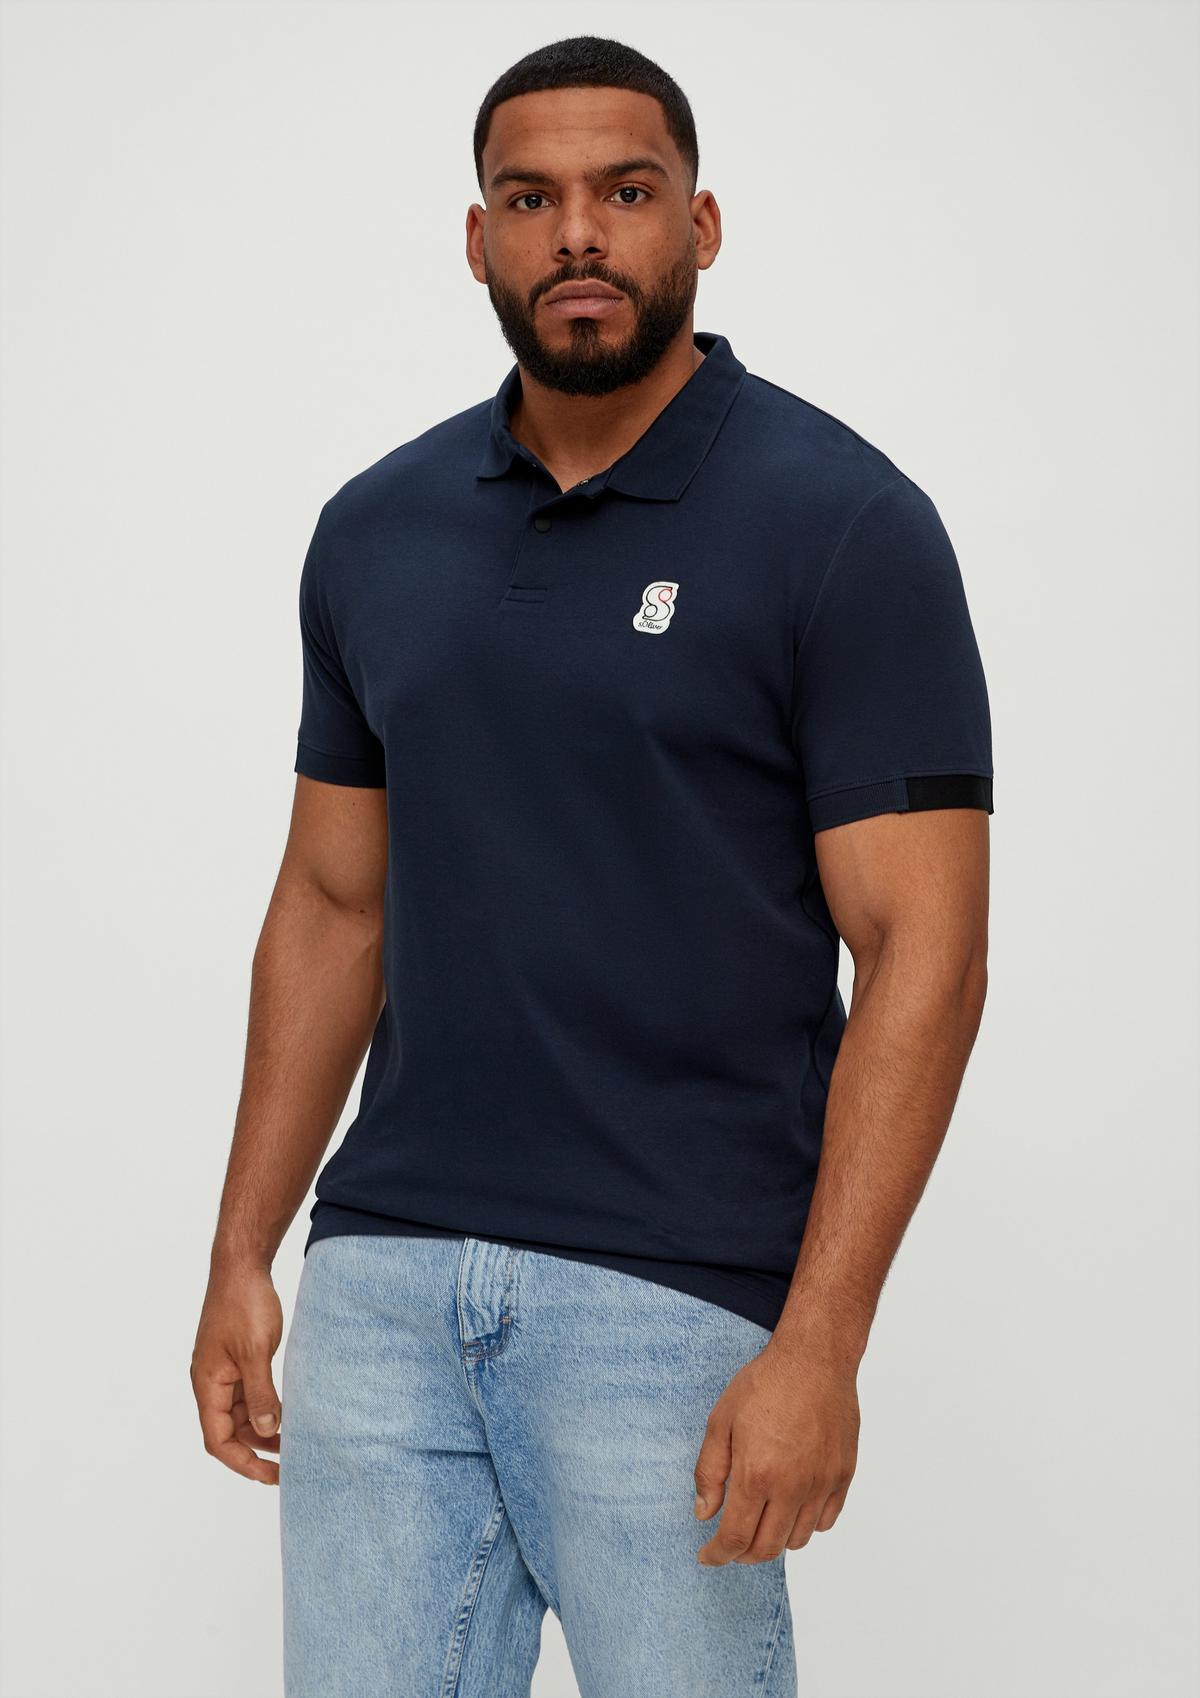 Polo a logo appliqué - shirt navy with